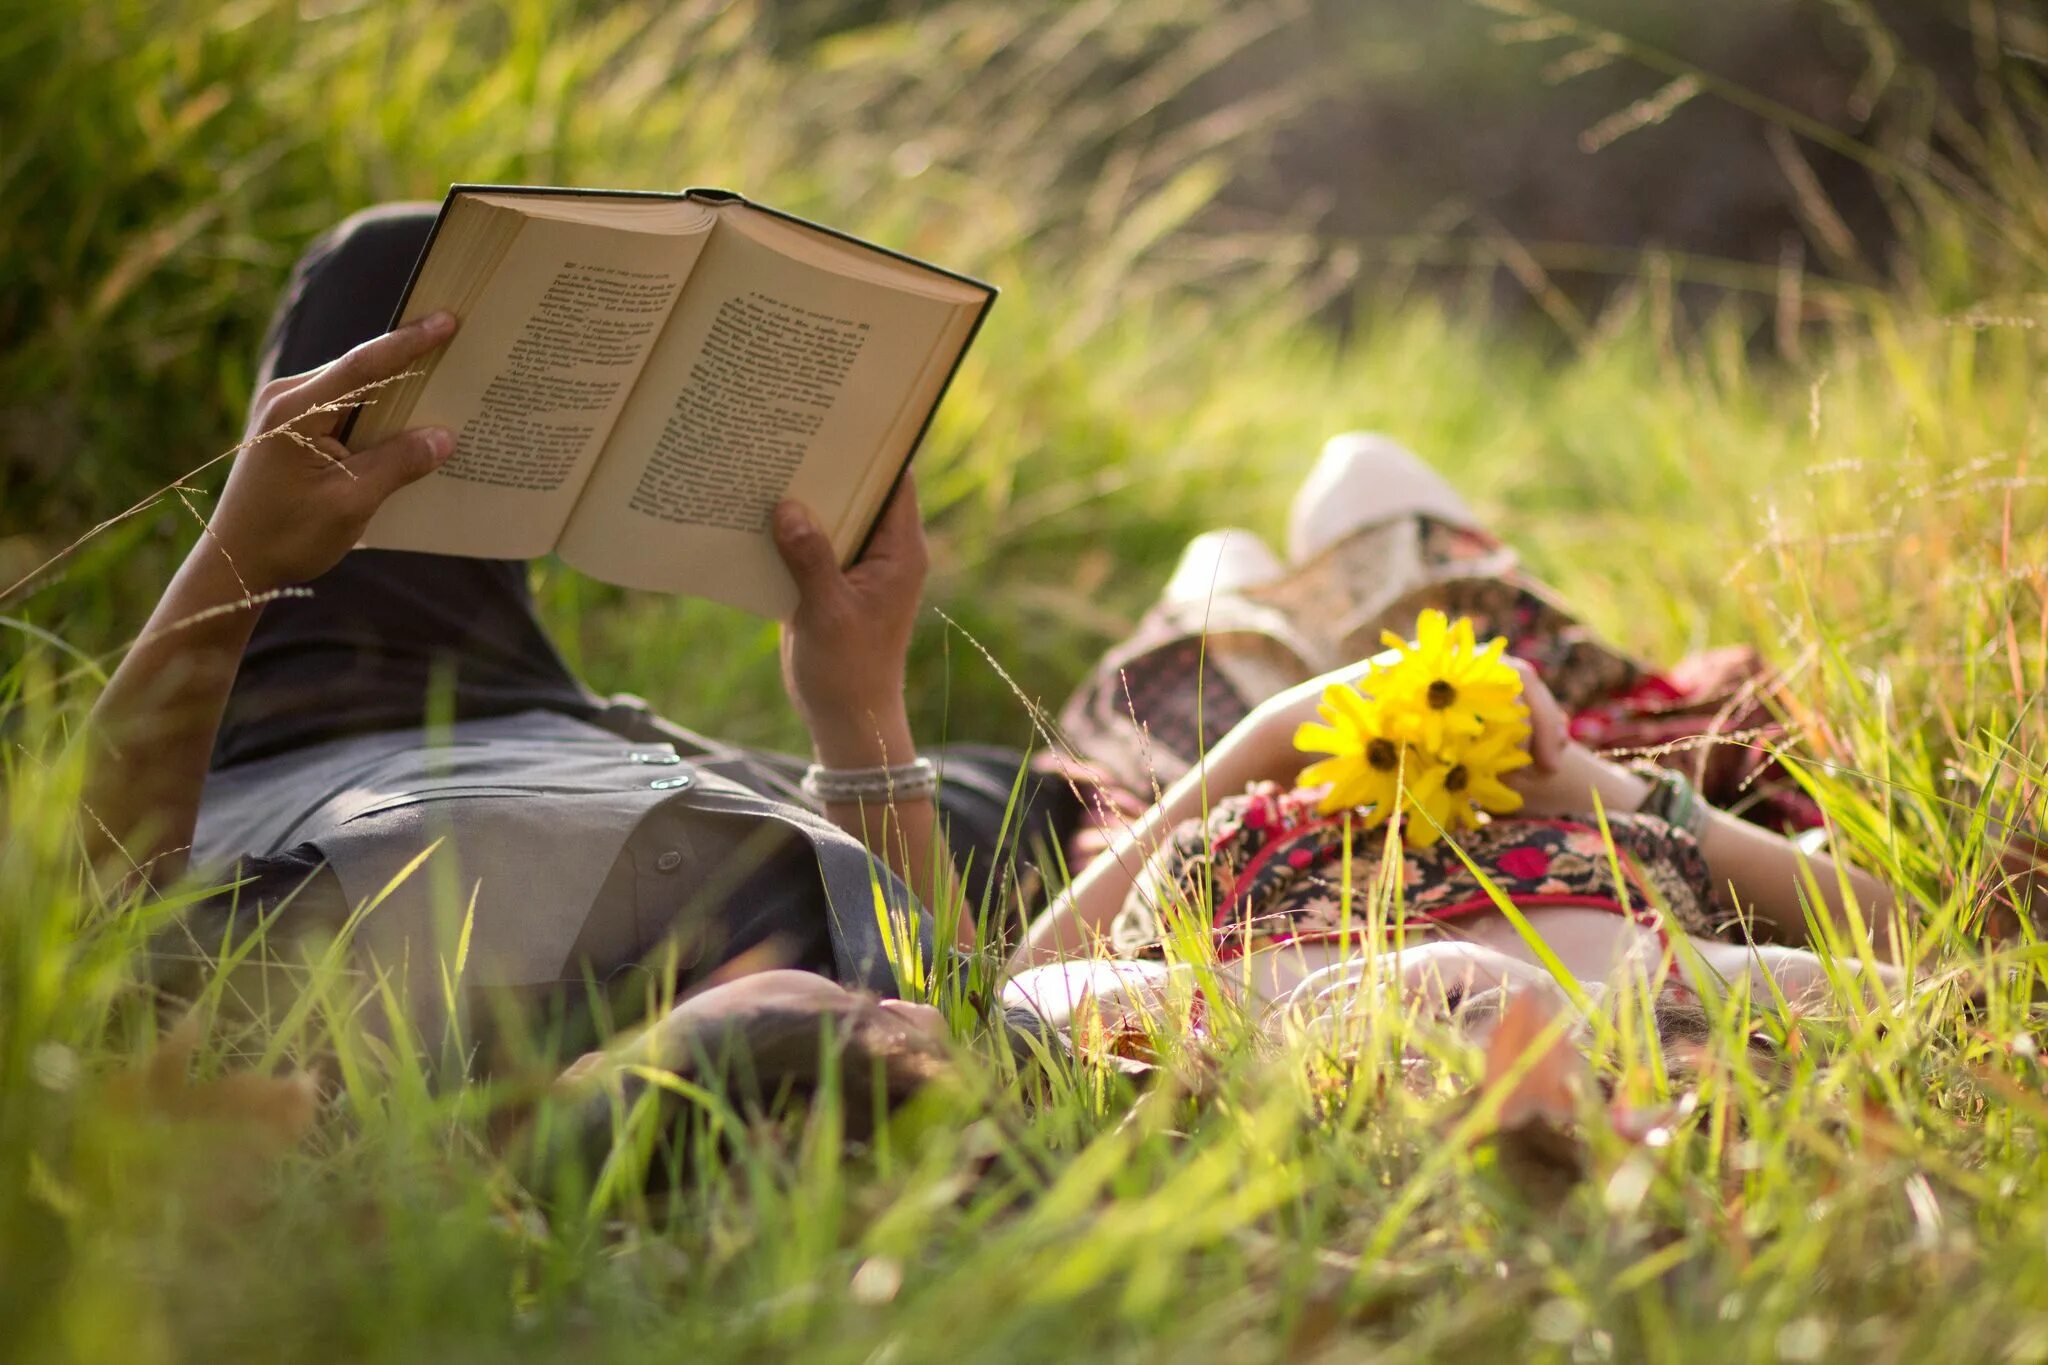 Чтение на природе. Фотосессия с книгой на природе. Человек и природа. Девочка с книжкой на траве. Книга в жизни семьи